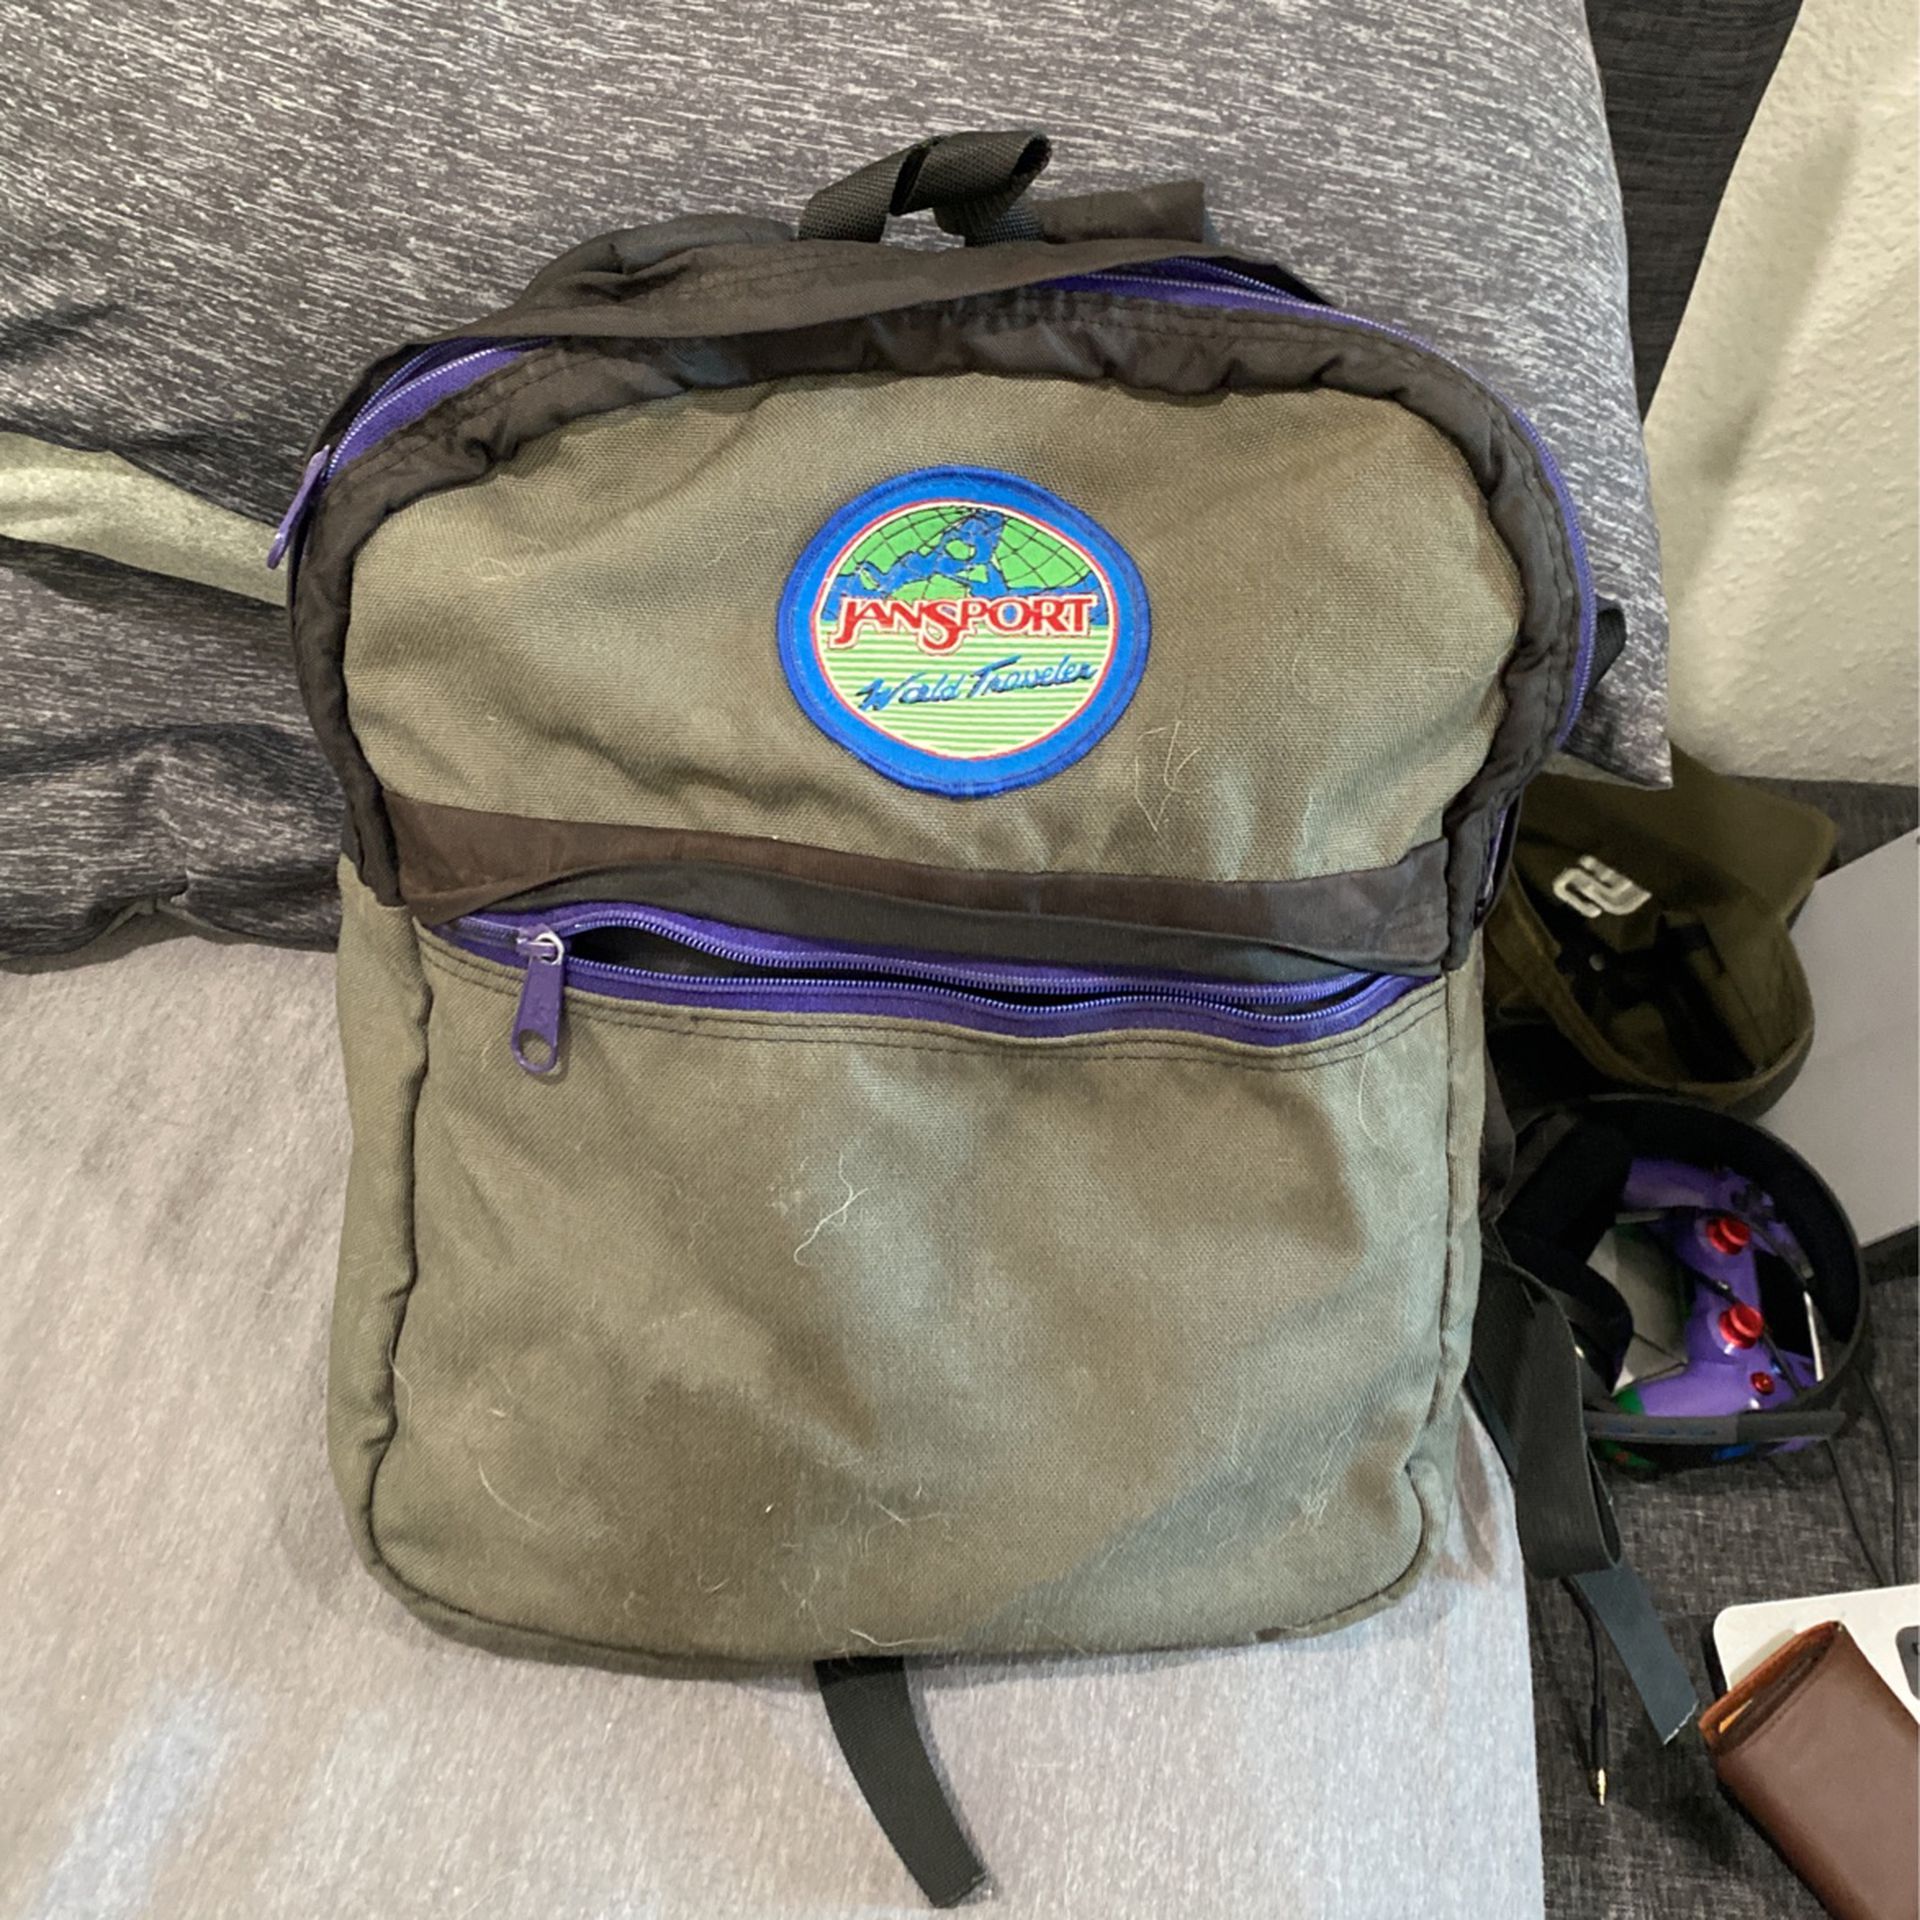 Jansport vintage backpack